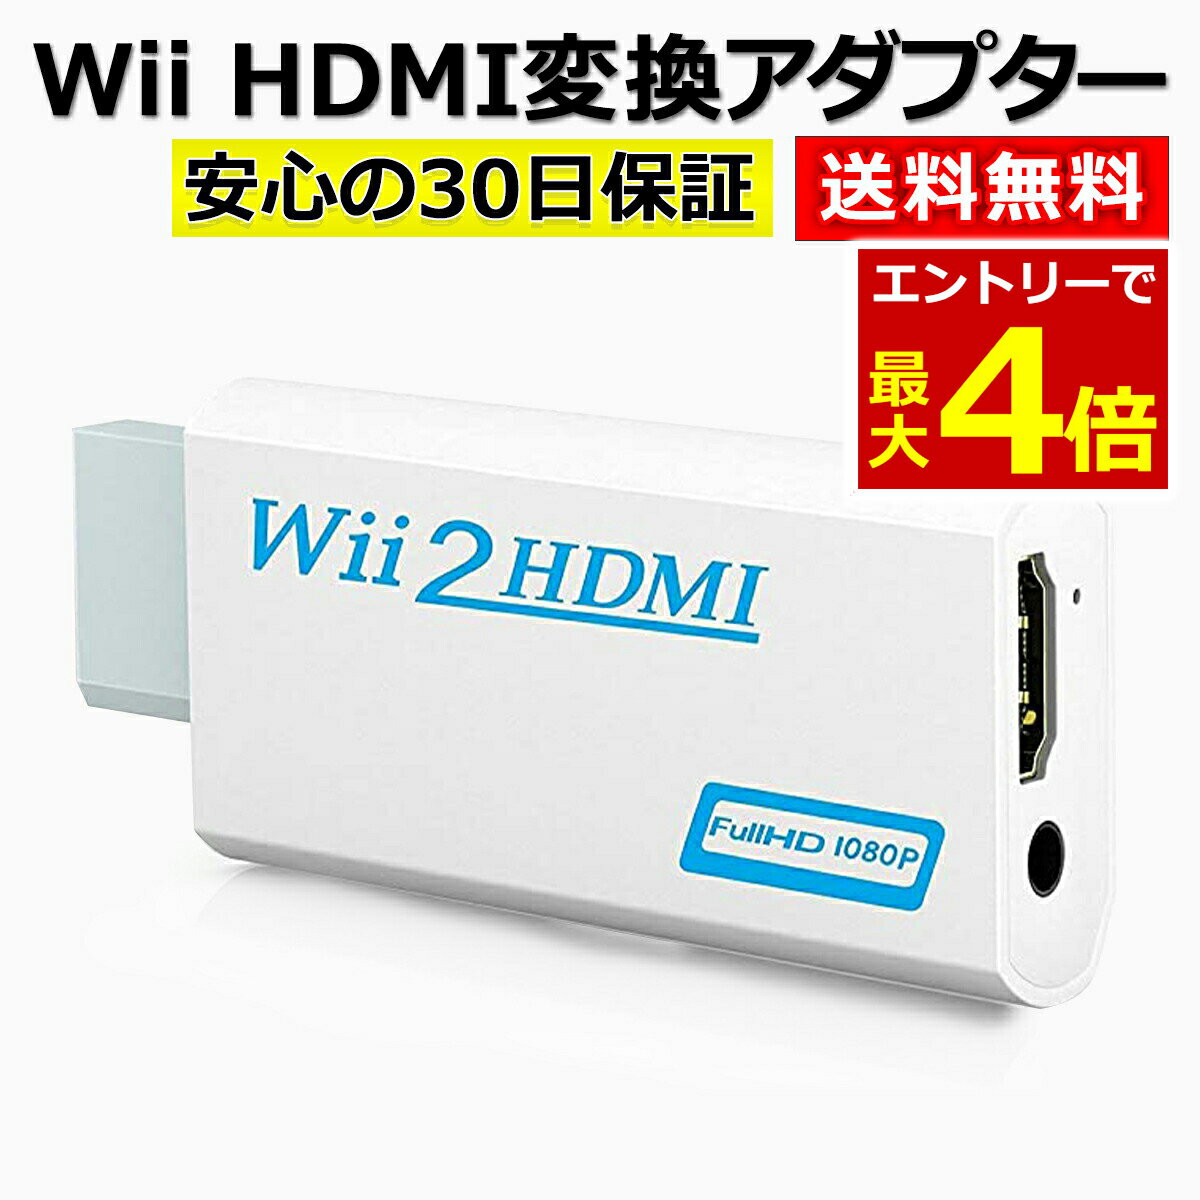 【5/20エントリーでP4倍!】Wii HDMI 変